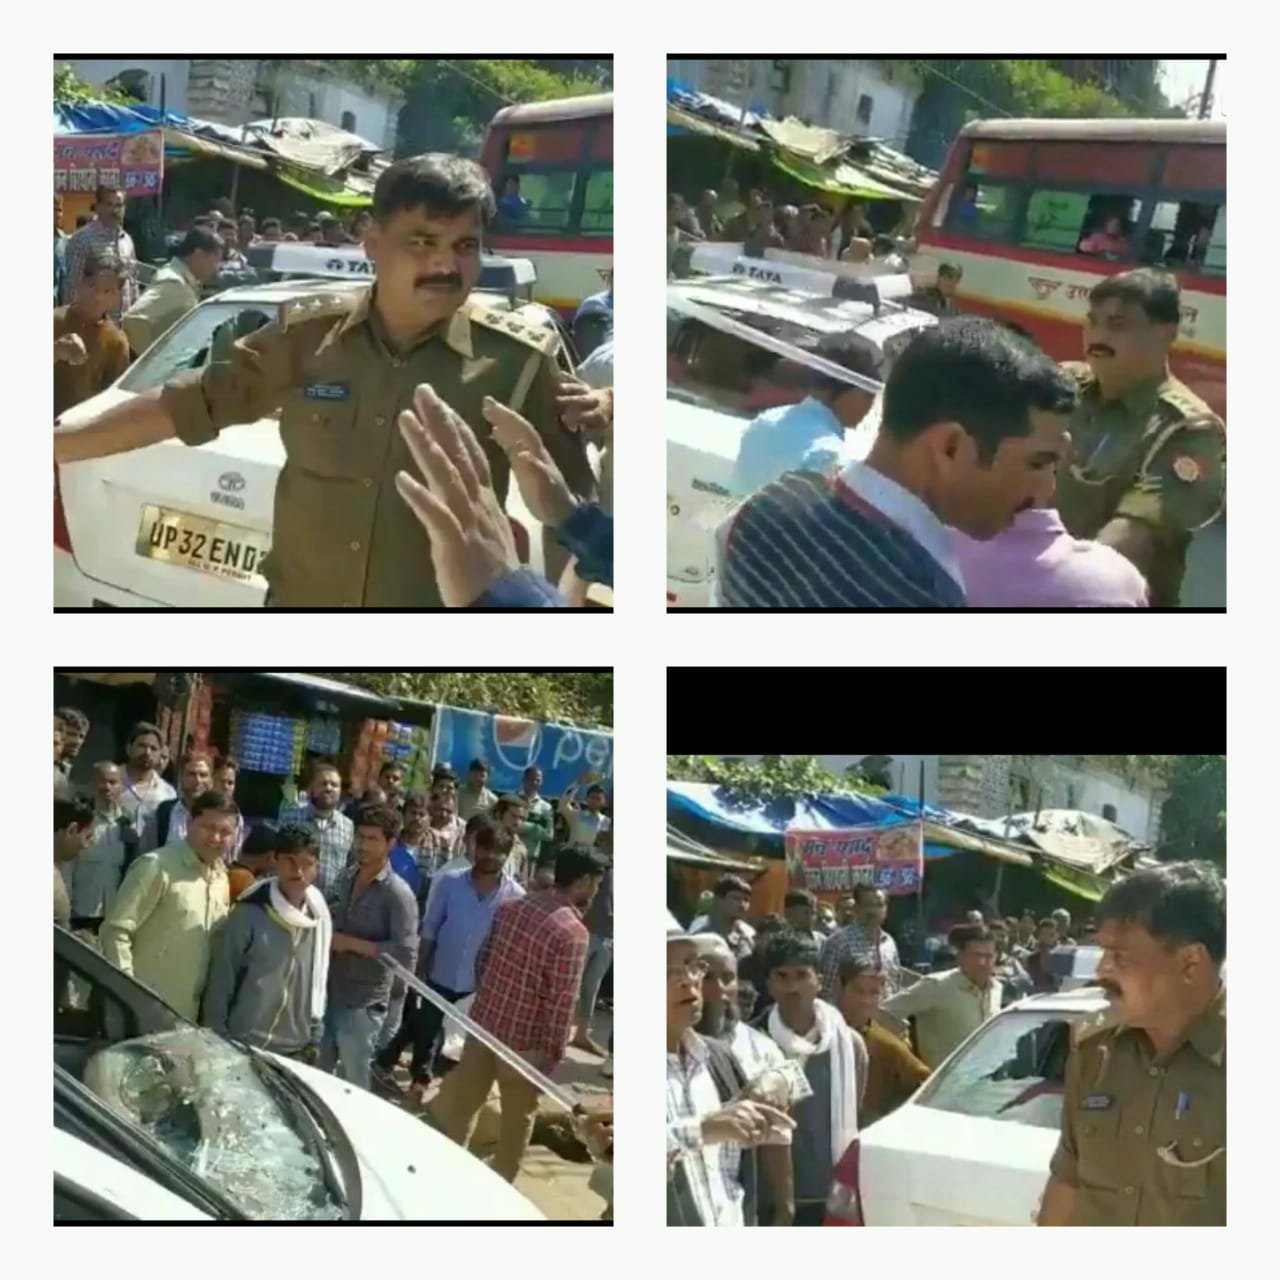 बहराइच शहर कोतवाल की दबंगई: रोडवेज पर निर्दोषों की गाड़ियों के शीशे तोड़े व बरसाई लाठियां | New India Times